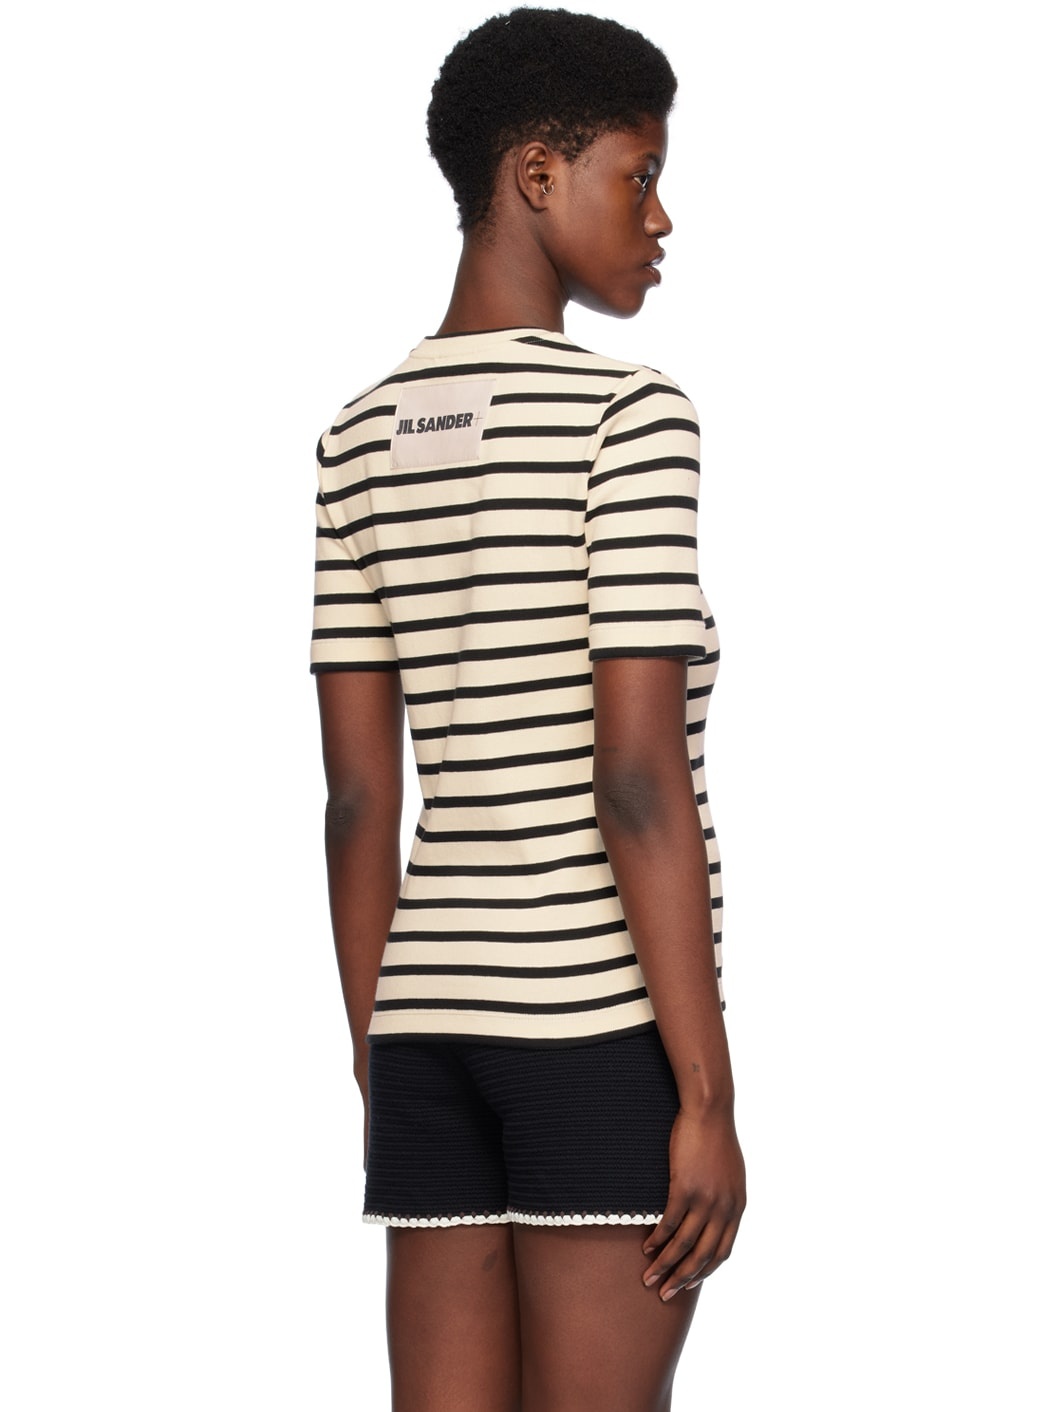 Off-White & Black Stripe T-Shirt - 3